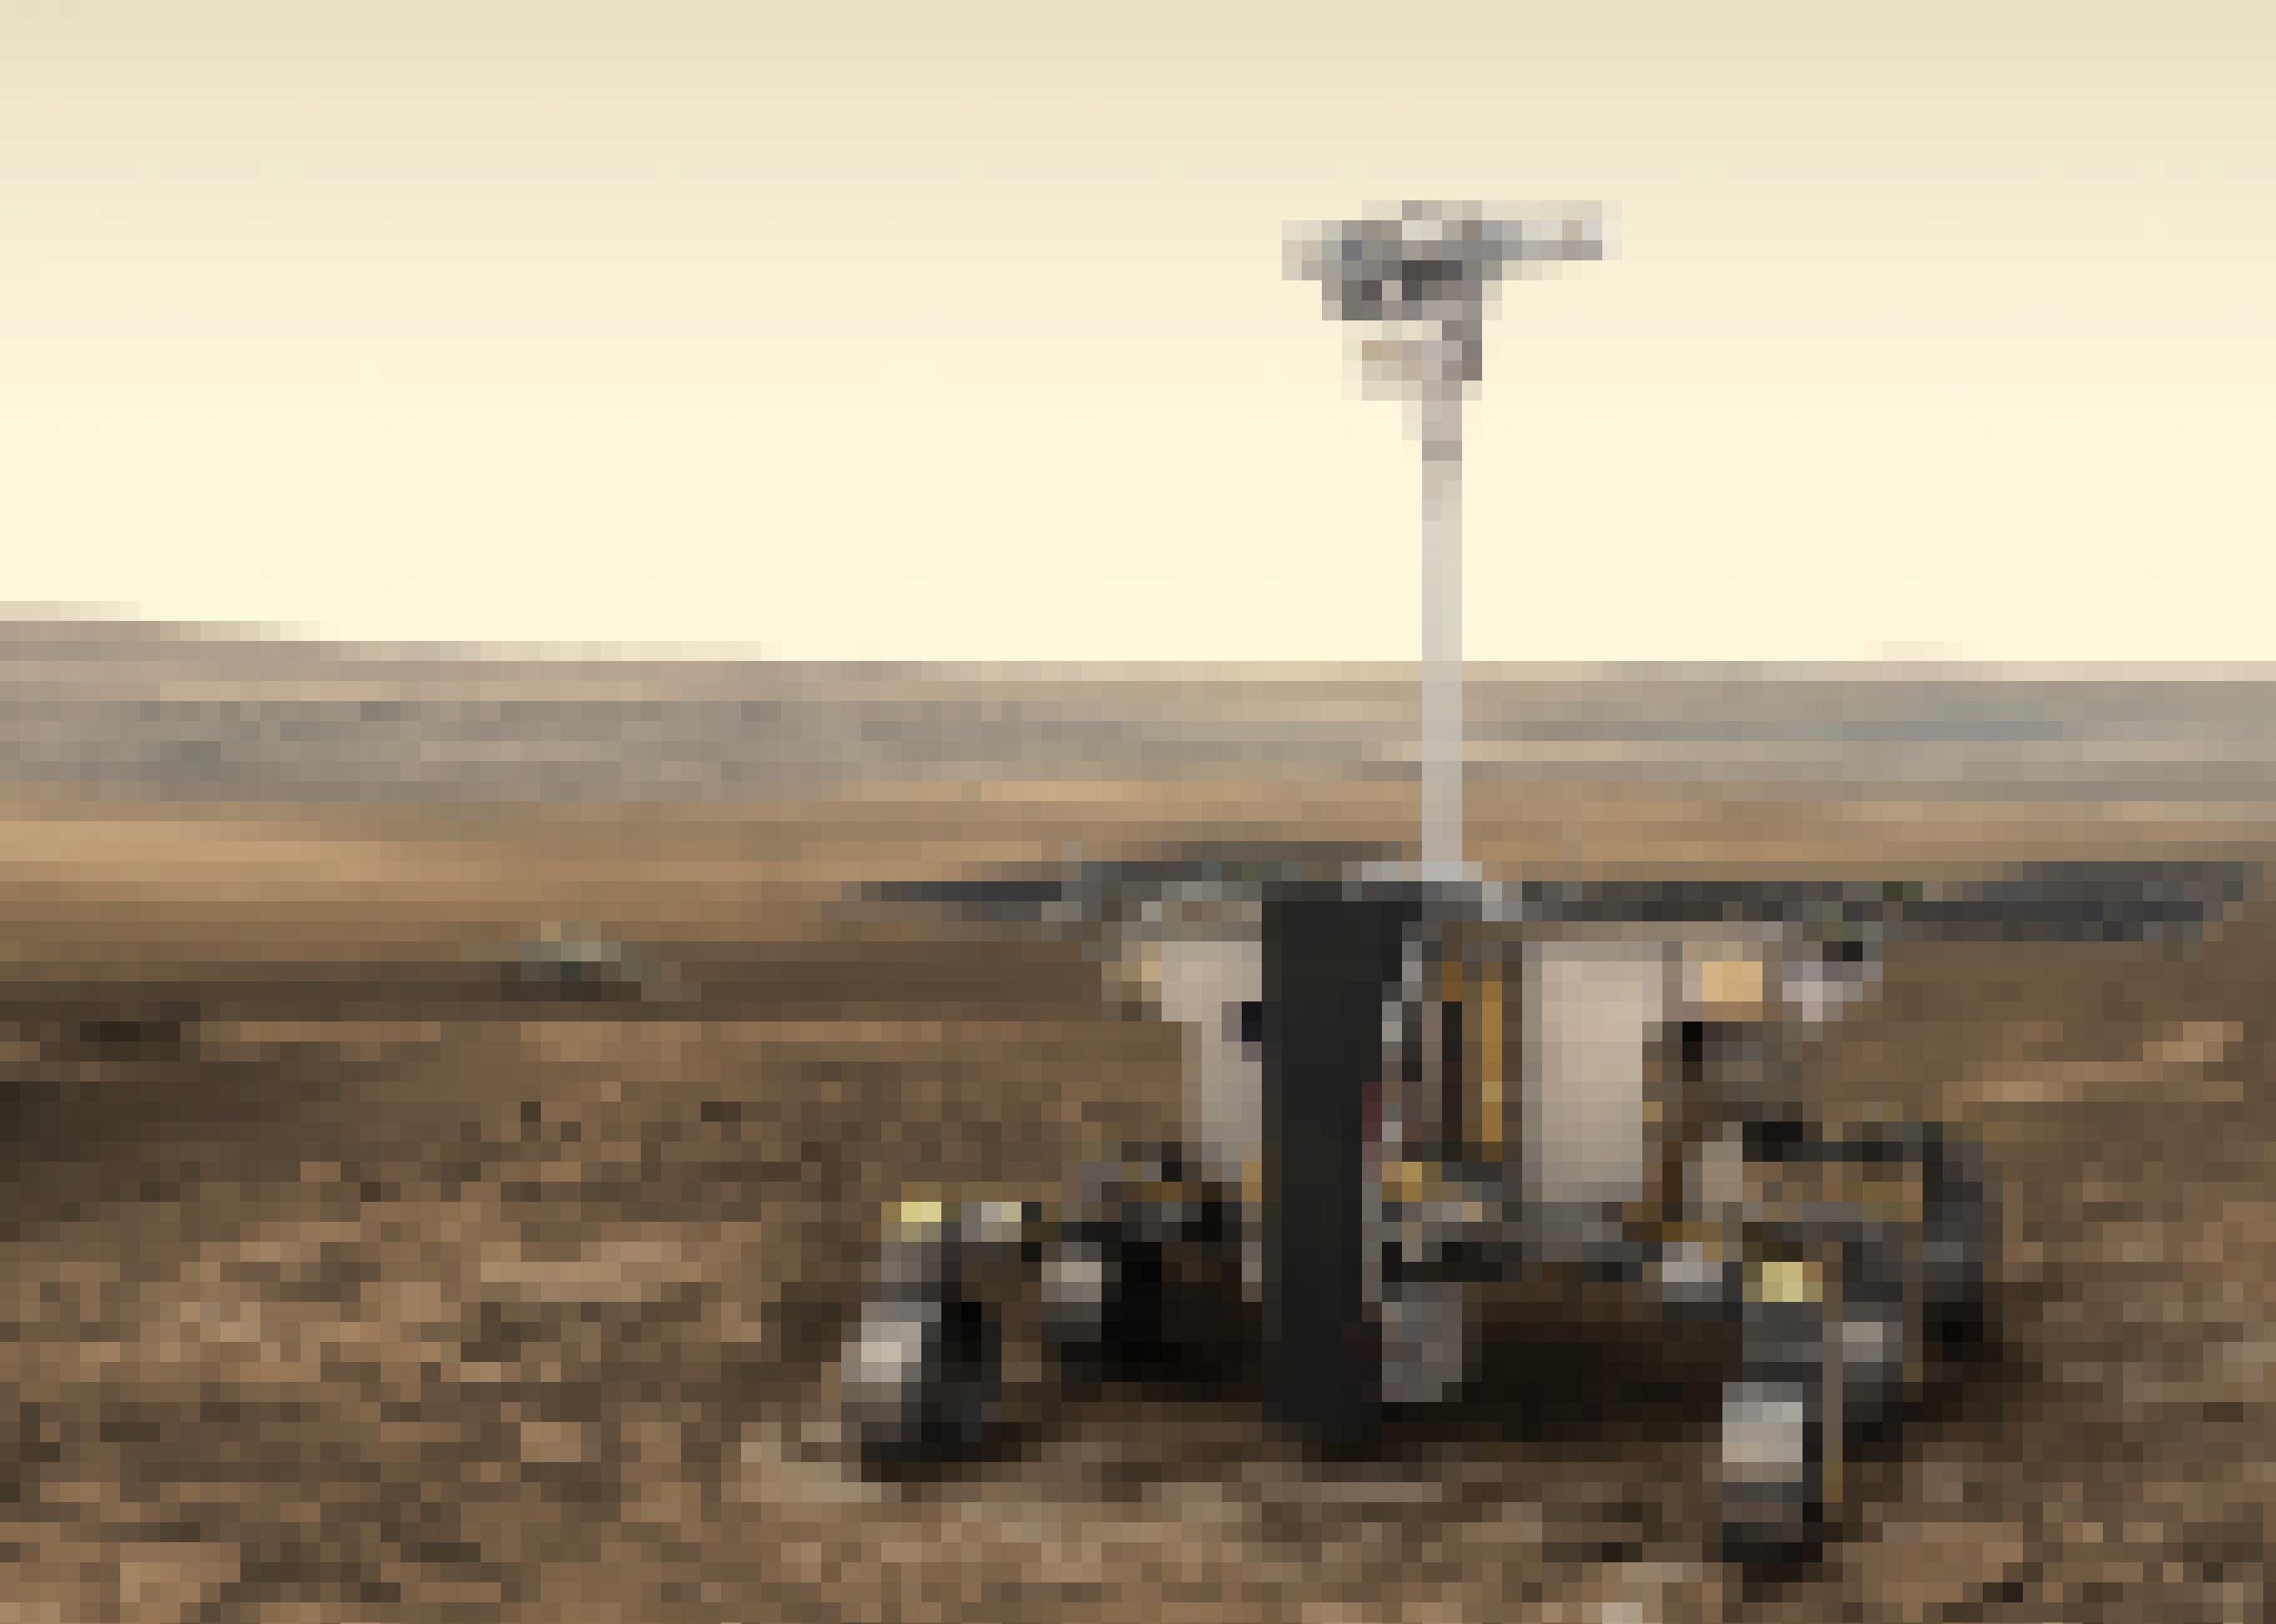 Grafik eines Rovers auf der Marsoberfläche mit einem schlanken Hals, auf der eine Kamera sitzt.